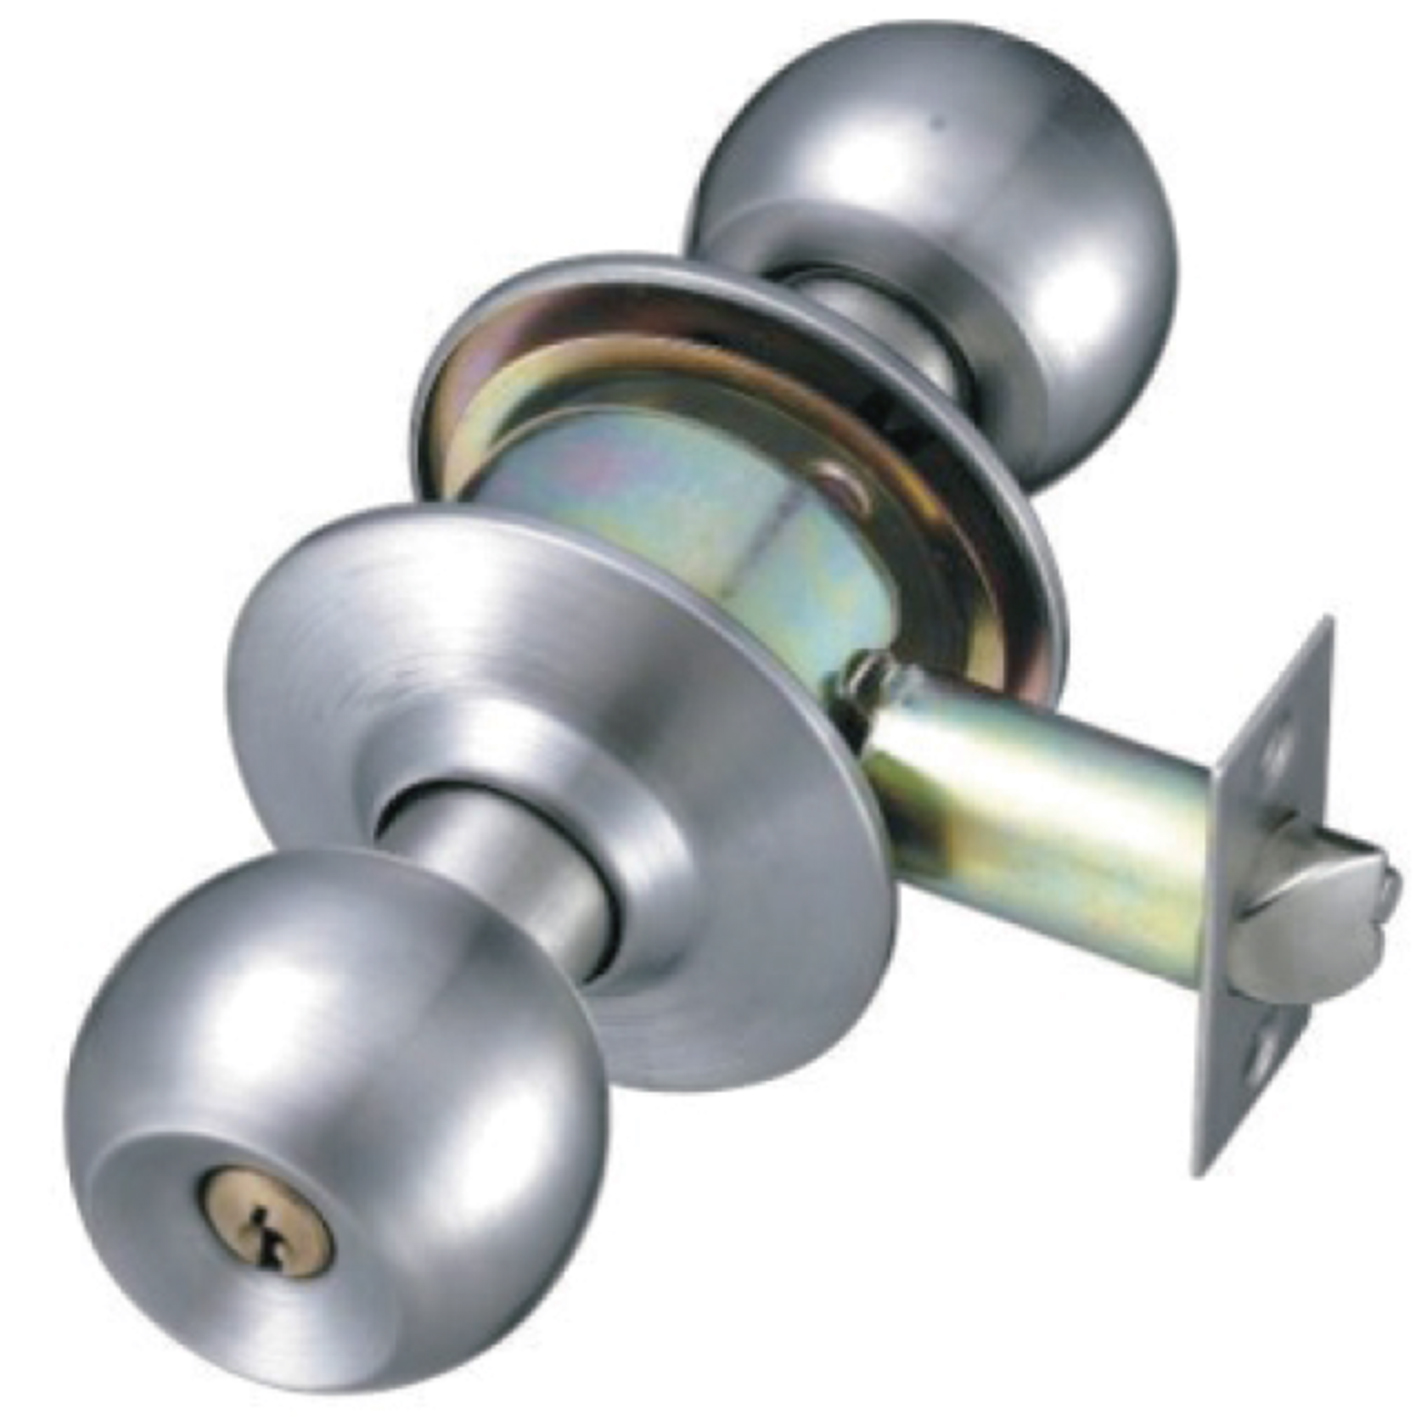 Ues for 45mm-60mm thicken door lock